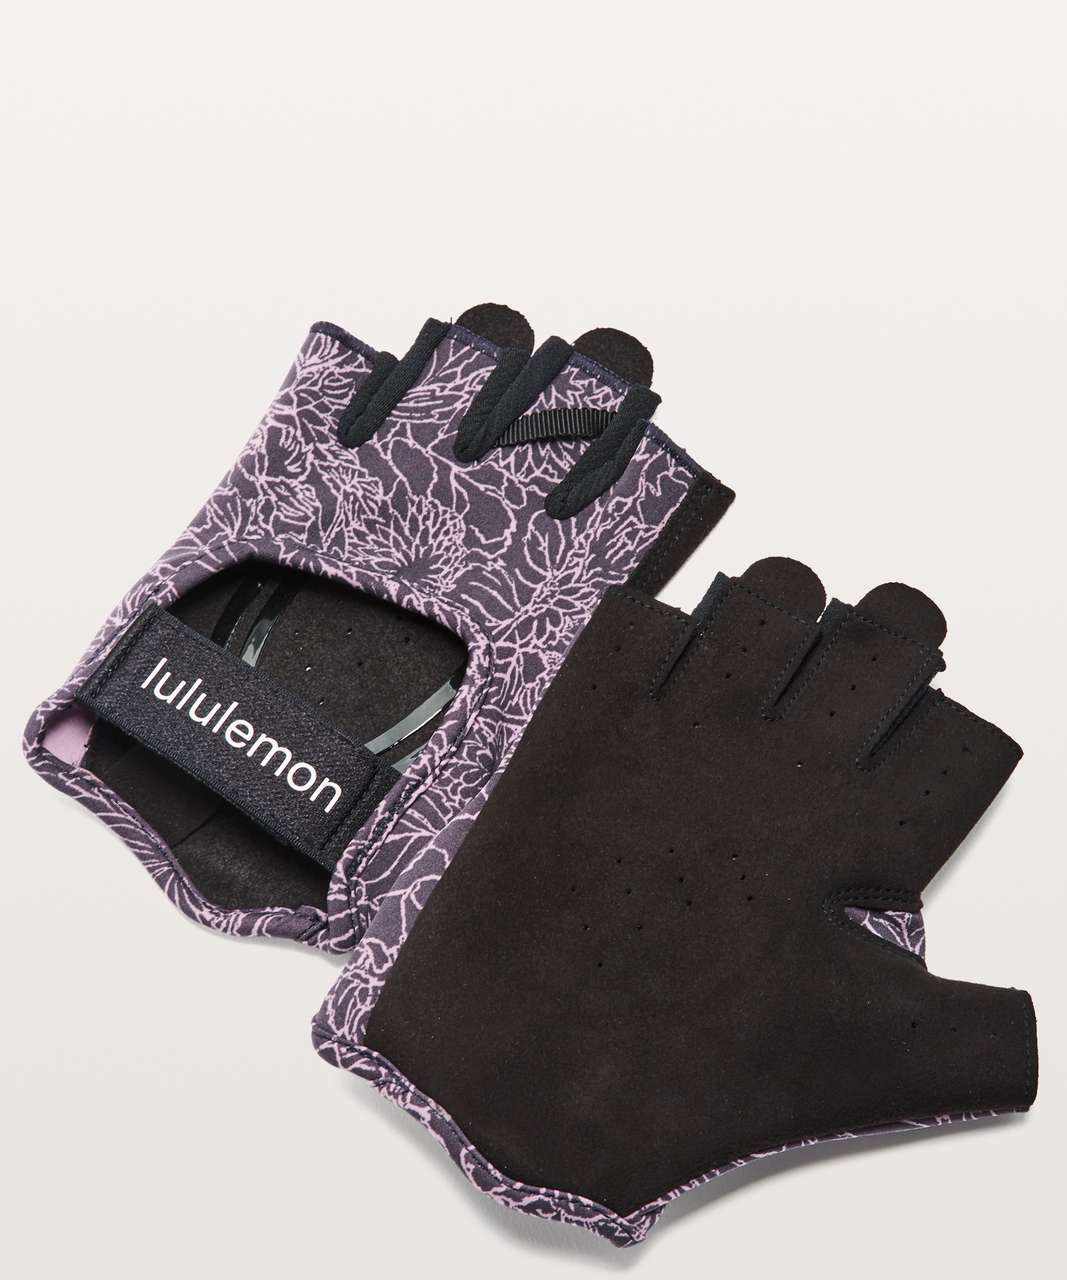 Lululemon Uplift Training Gloves - Arabesque Antoinette Smoky Quartz / Black